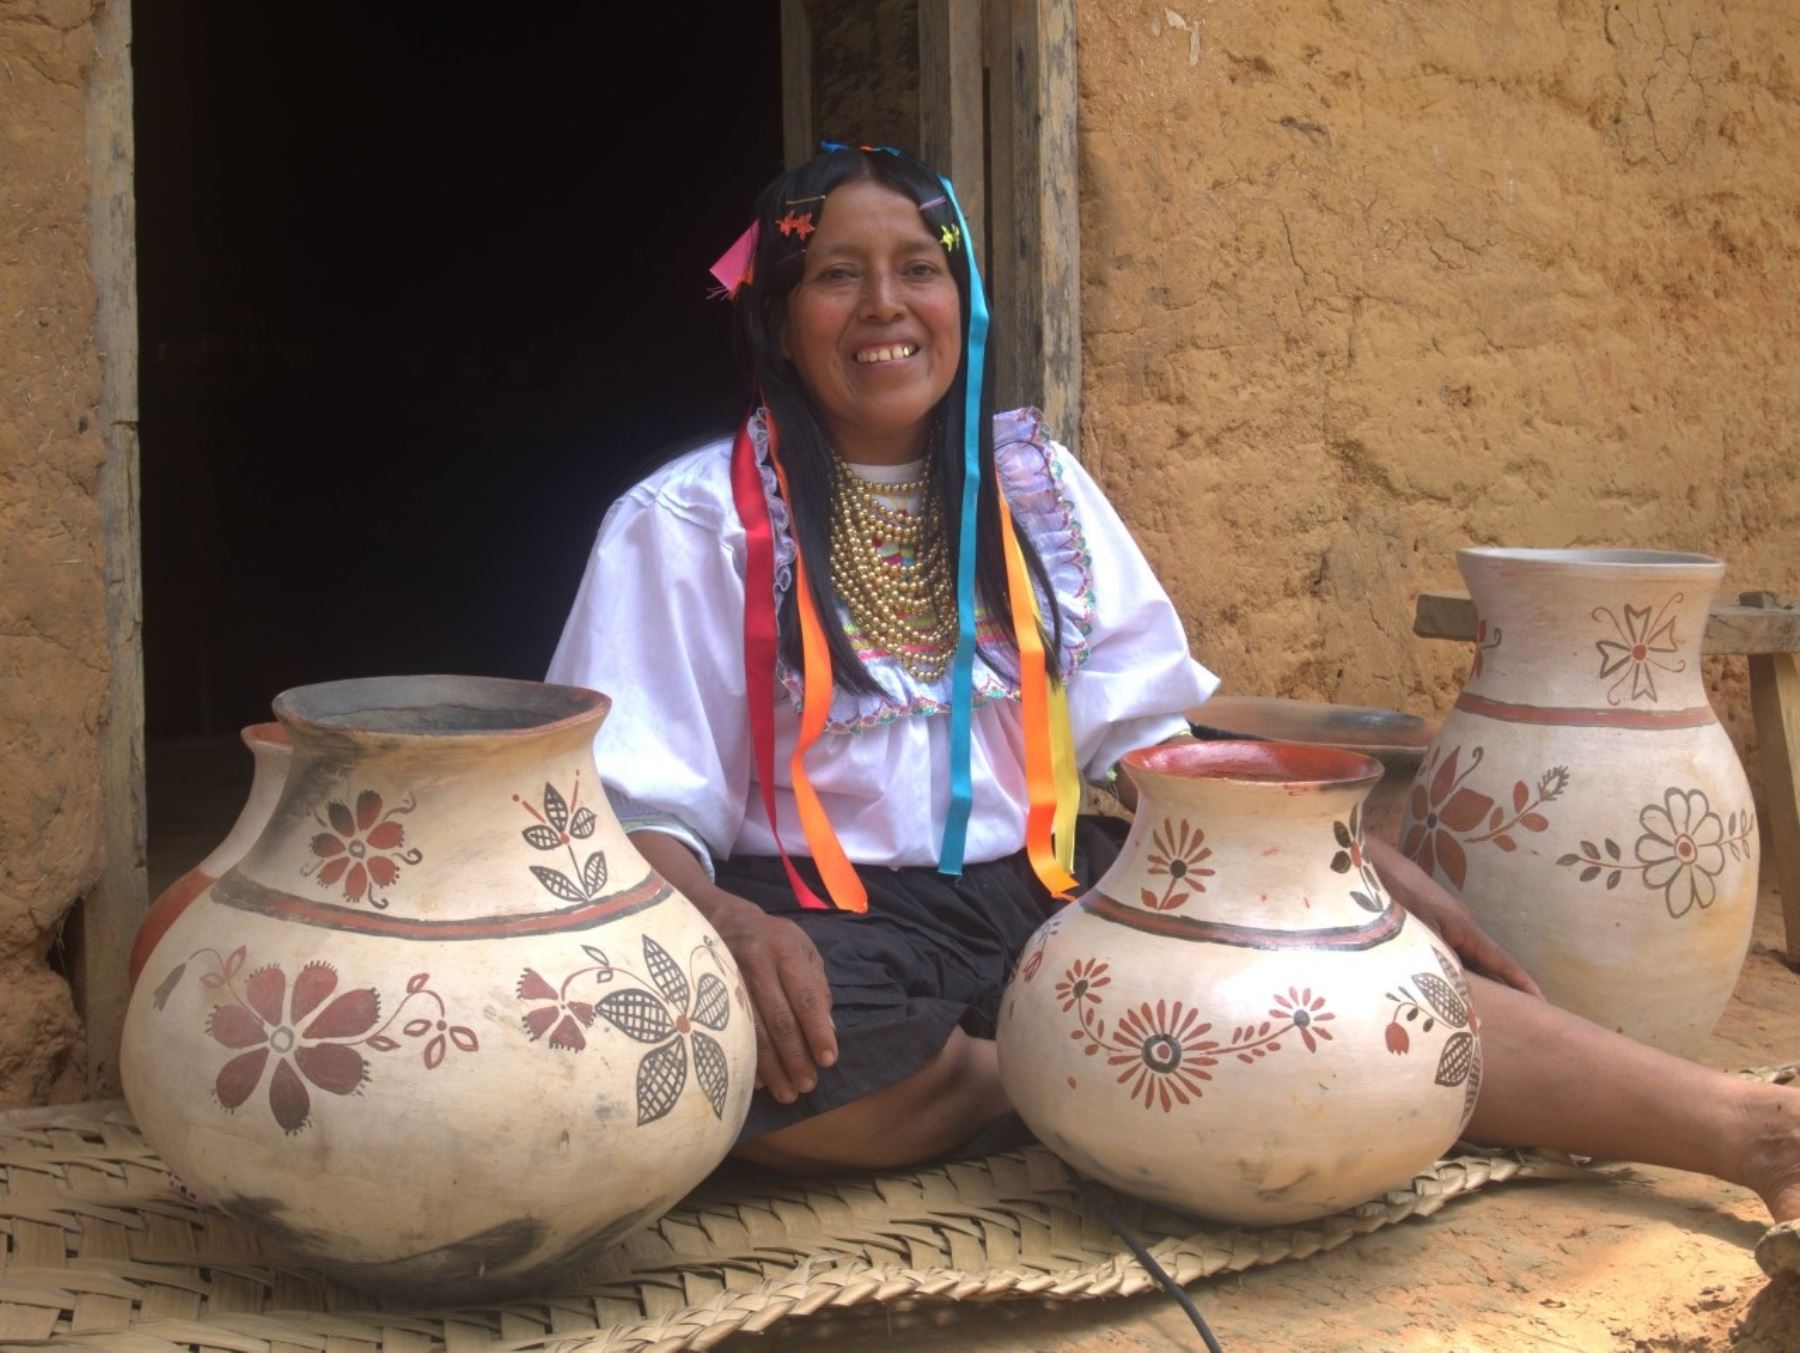 Conoce a Guillermina Tapullima, la alfarera que mantiene vivo el legado cultural de Lamas, en San Martín. Ella elabora hermosas piezas de cerámica gracia a su conocimiento de la técnica kichwa. ANDINA/Difusión